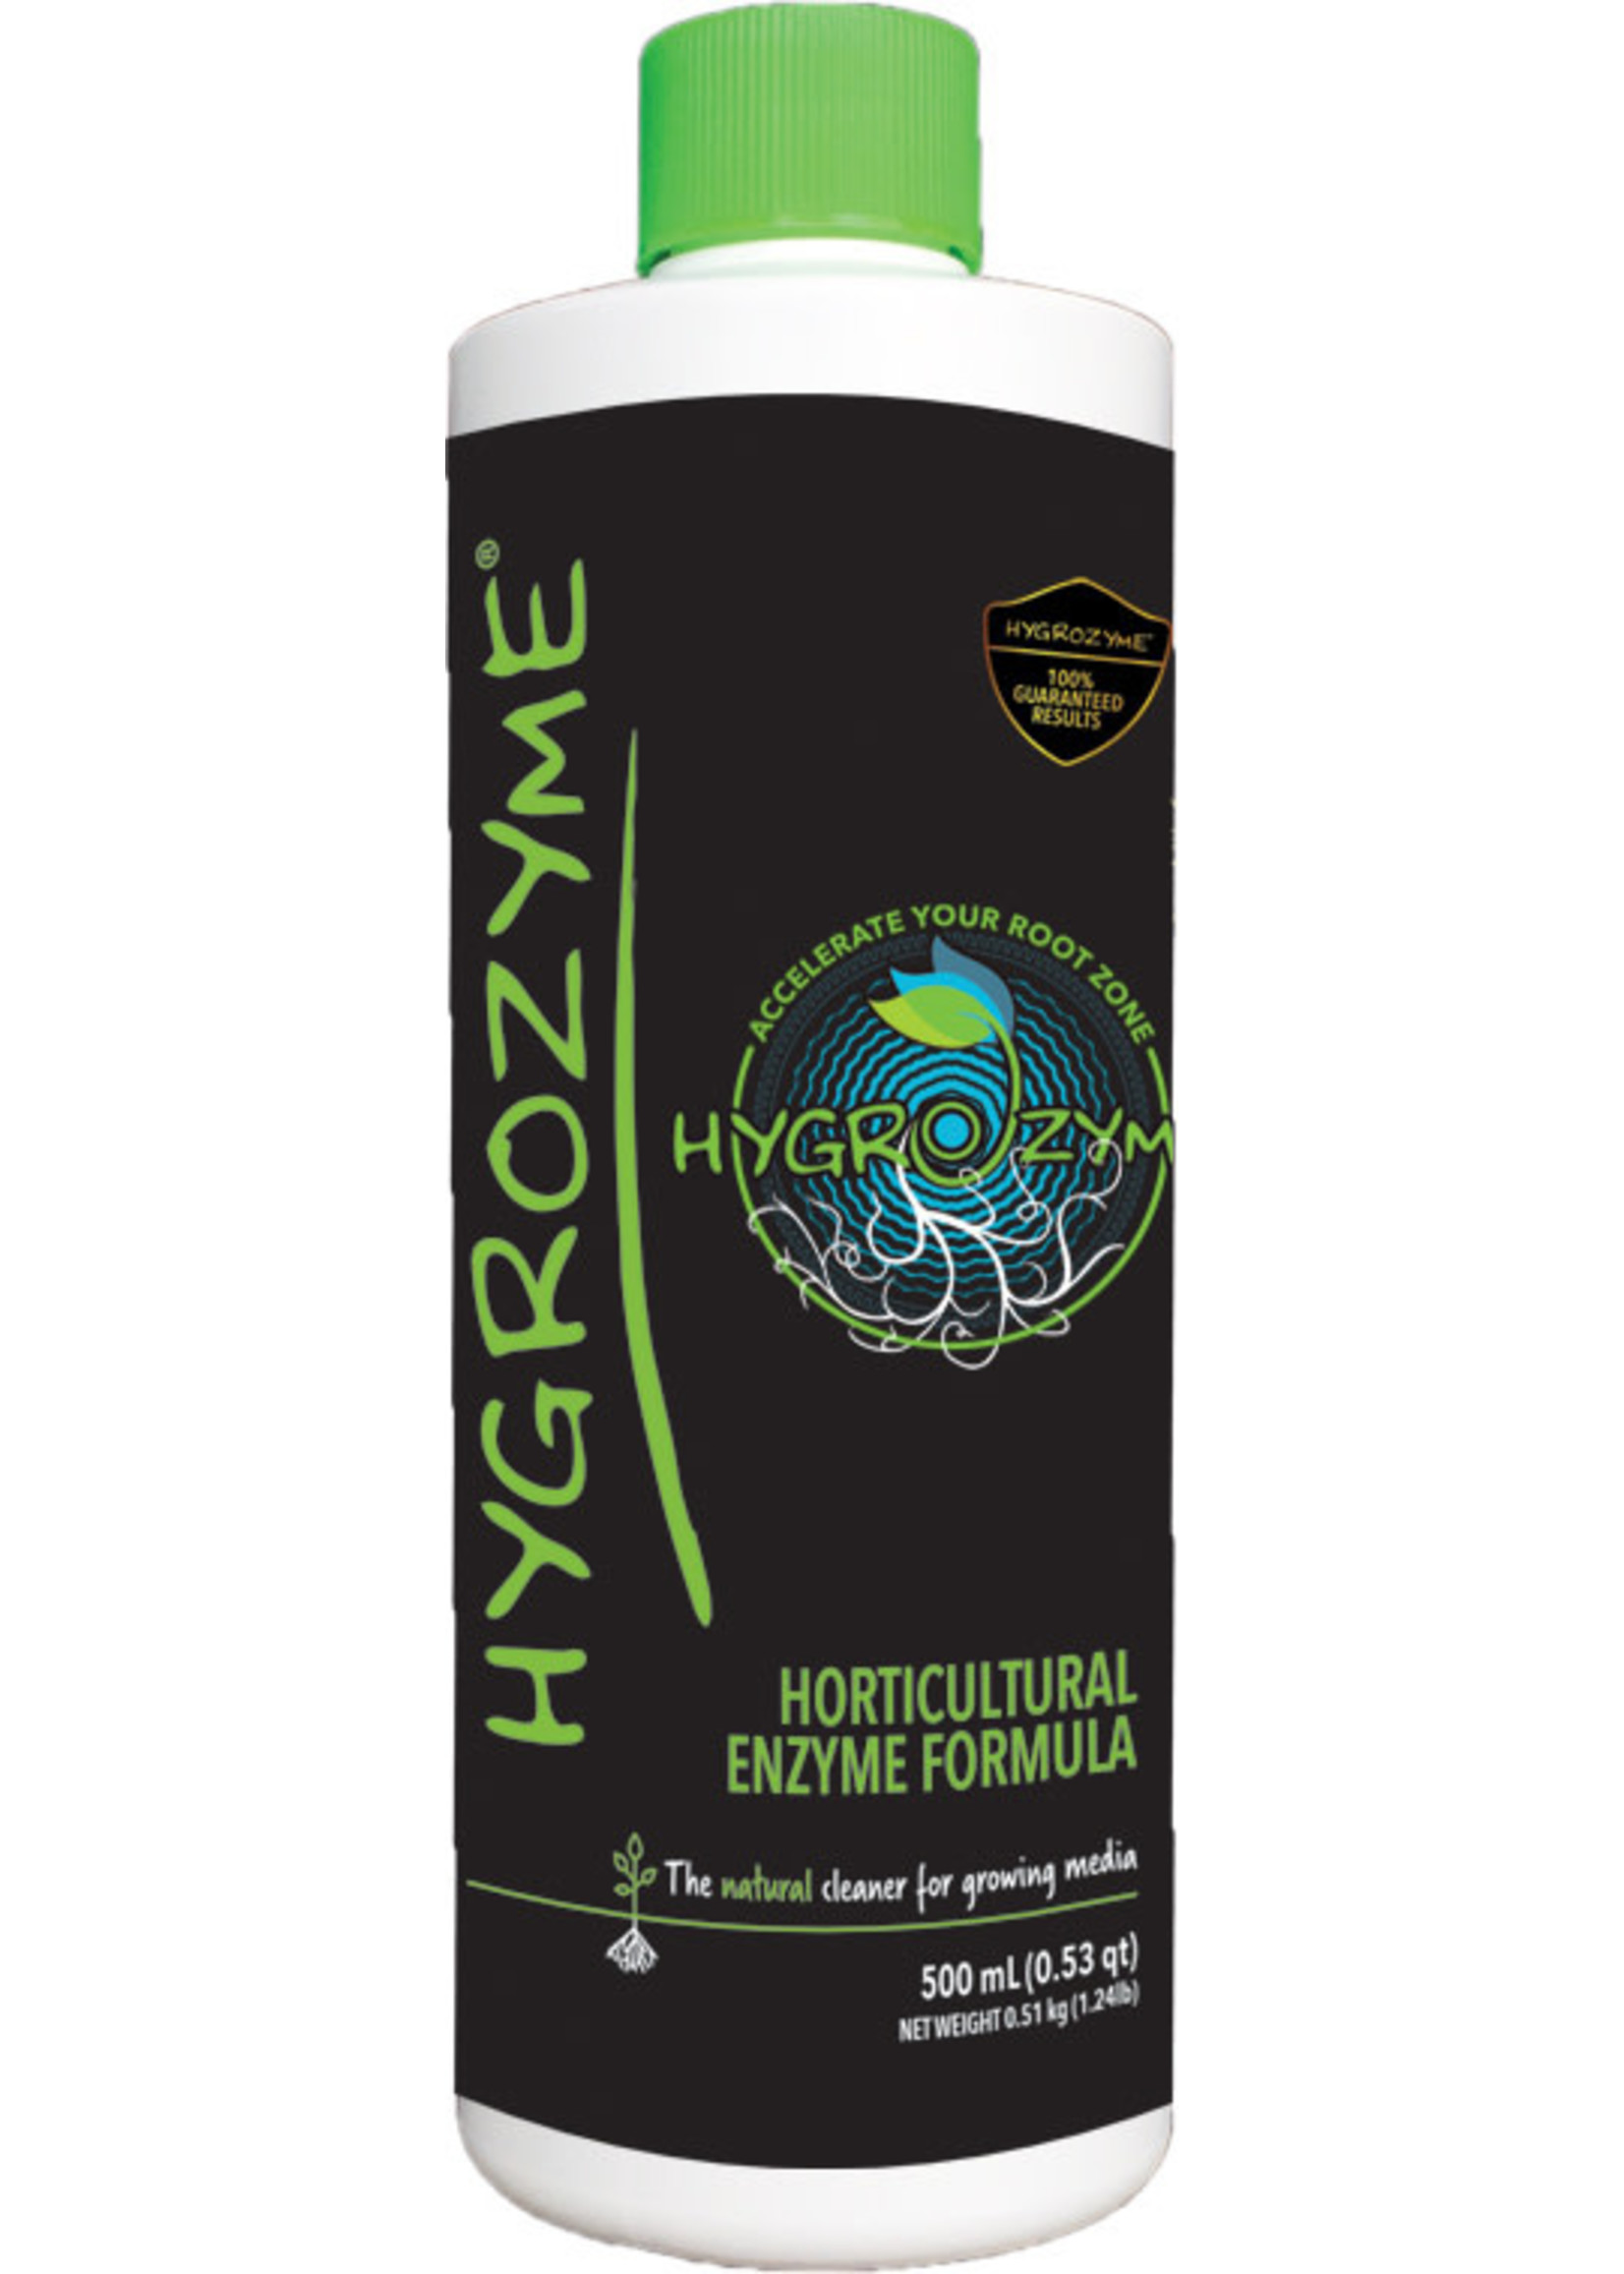 HYGROZYME Hygrozyme Horticultural Enzyme Formula, 500 ml